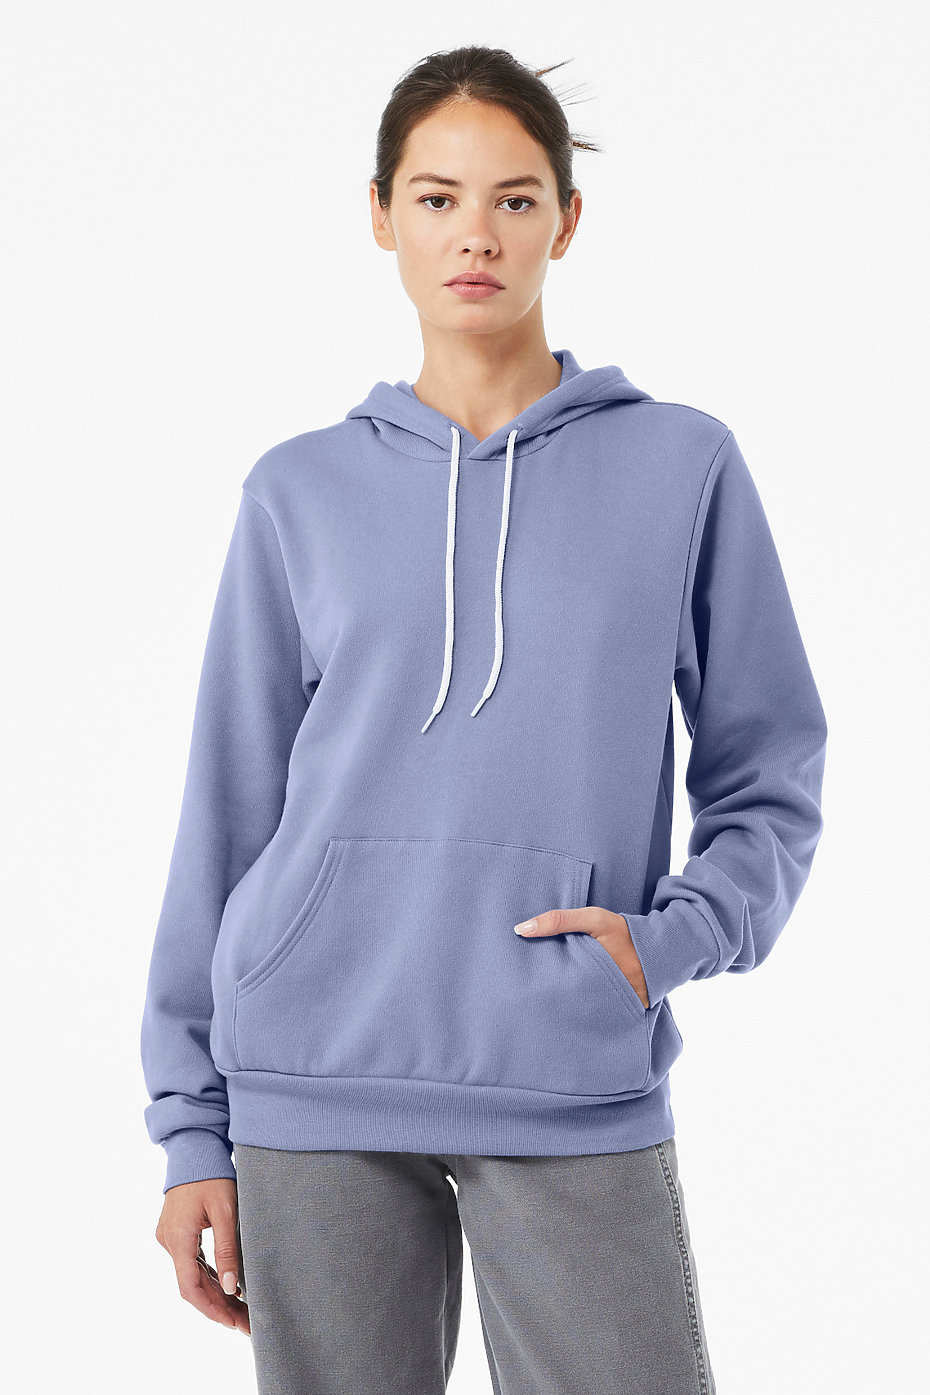 Hoodies For Men, Custom Sweatshirts, Pullover Hoodies, Mens Wholesale  Clothing